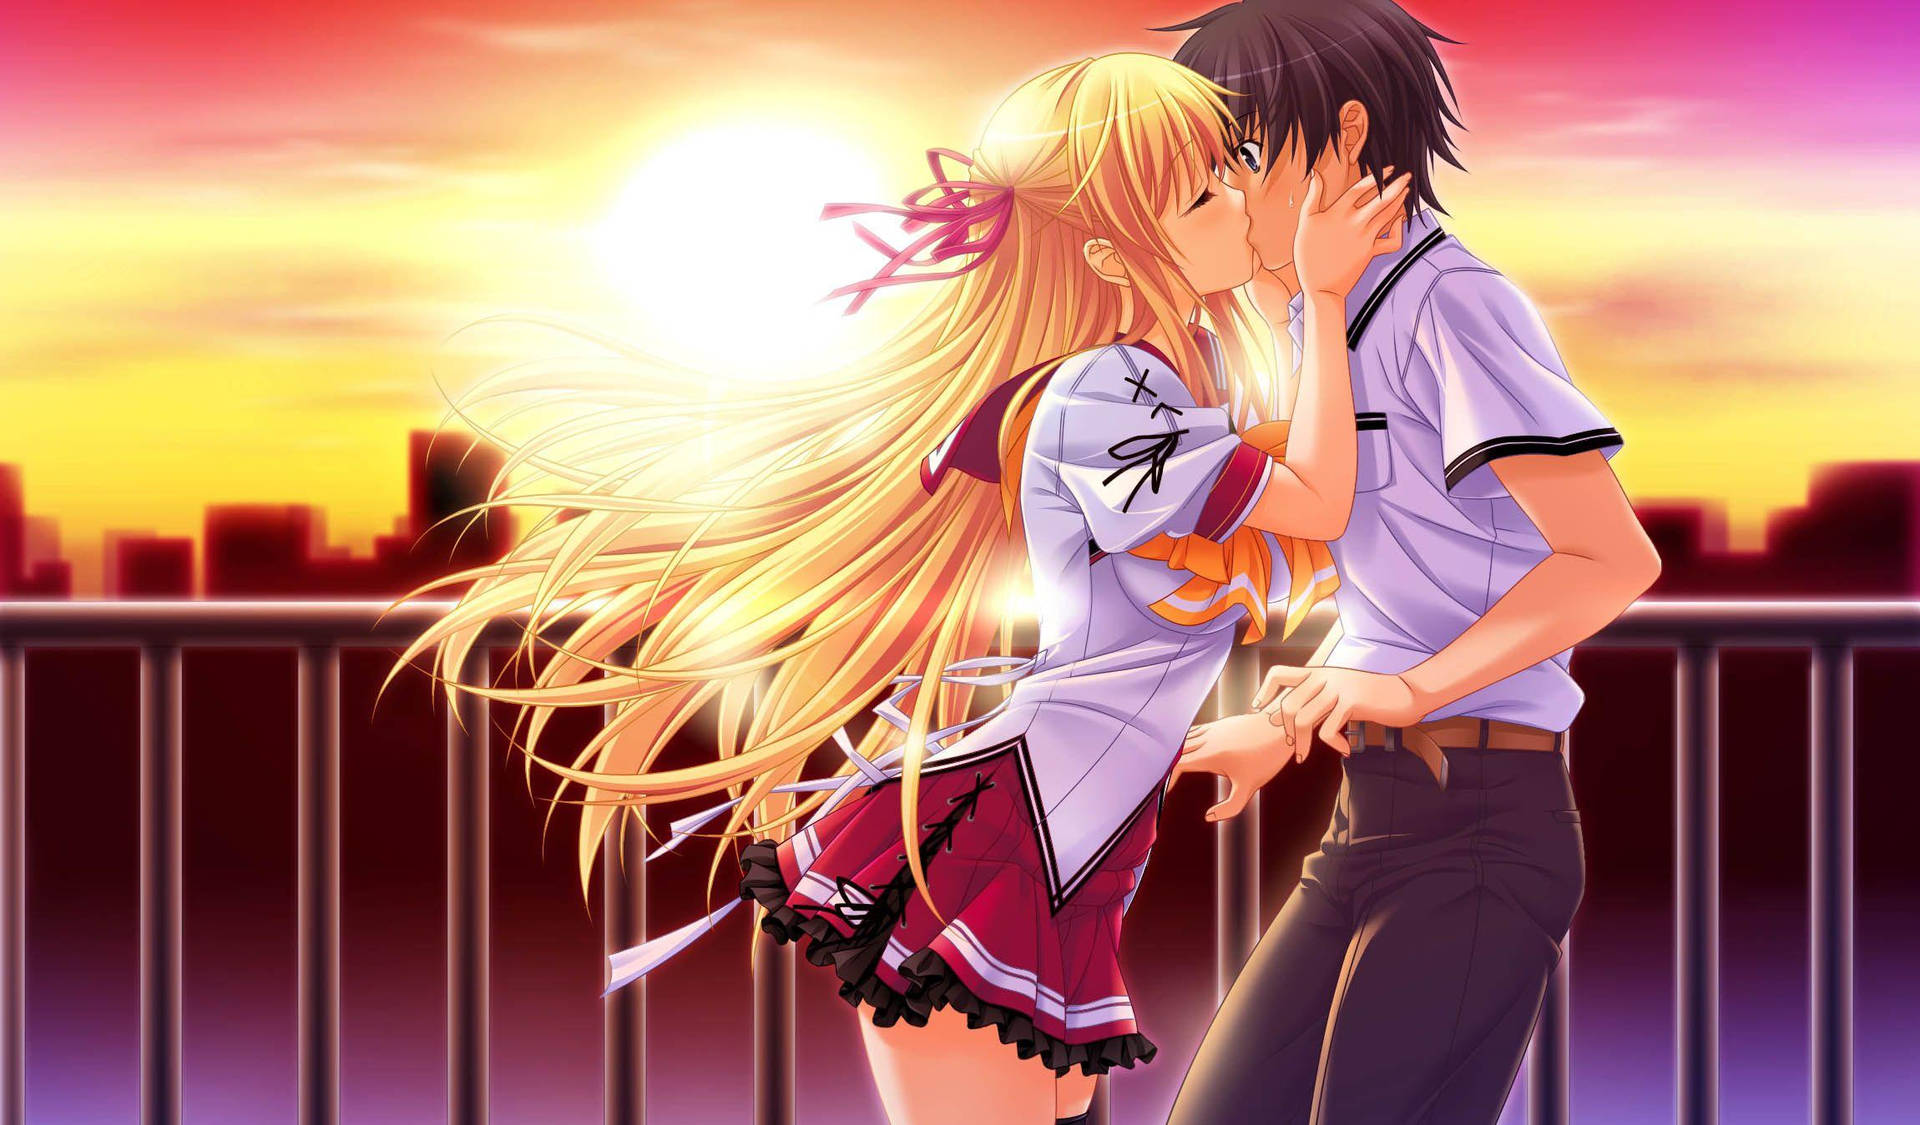 Kissing On Bridge Love Anime Wallpaper